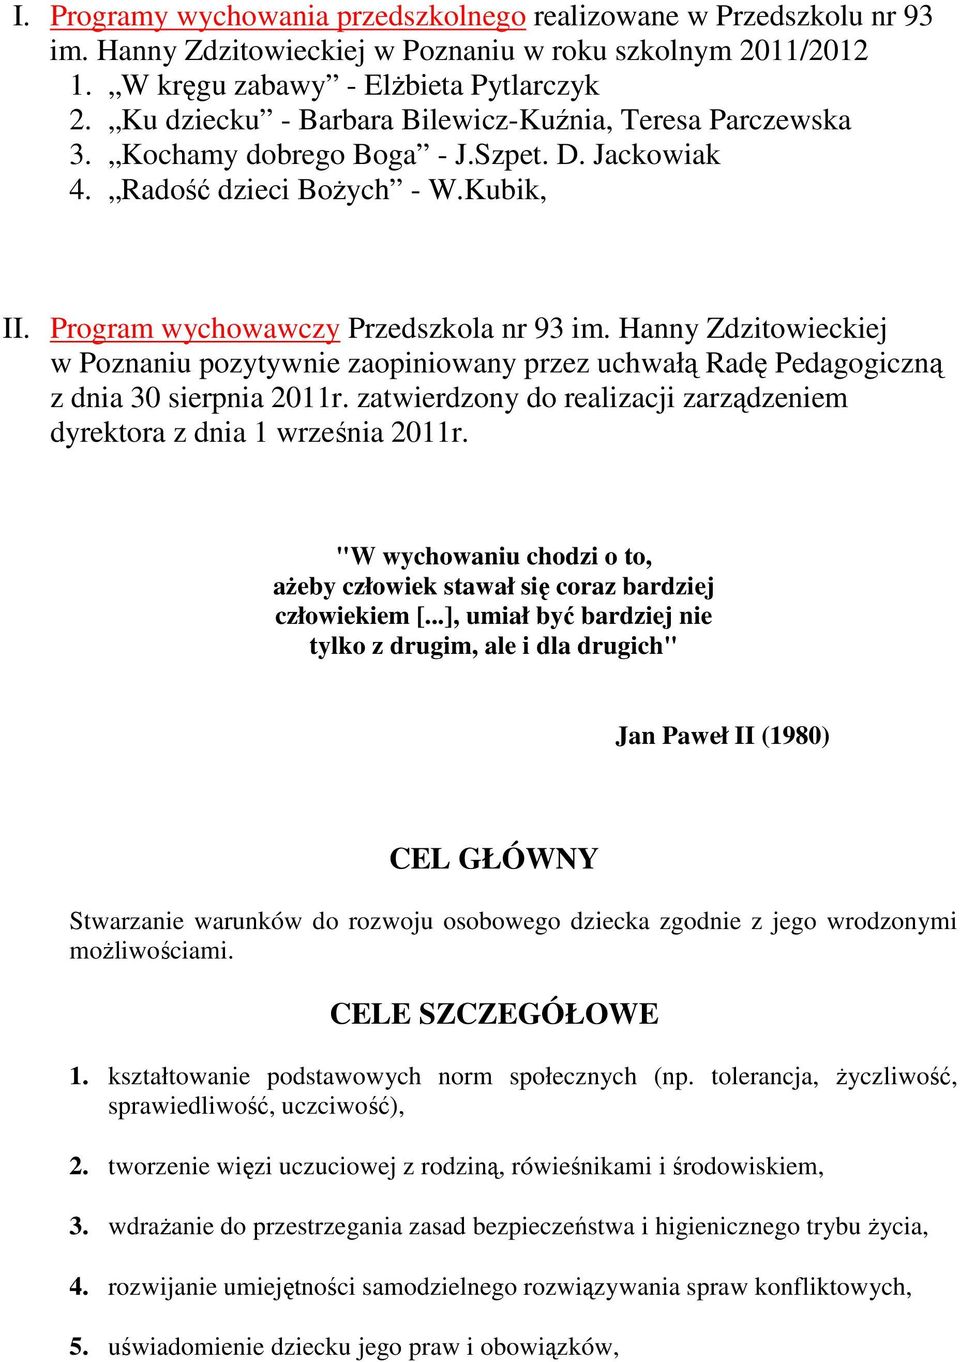 Hanny Zdzitowieckiej w Poznaniu pozytywnie zaopiniowany przez uchwałą Radę Pedagogiczną z dnia 30 sierpnia 2011r. zatwierdzony do realizacji zarządzeniem dyrektora z dnia 1 września 2011r.